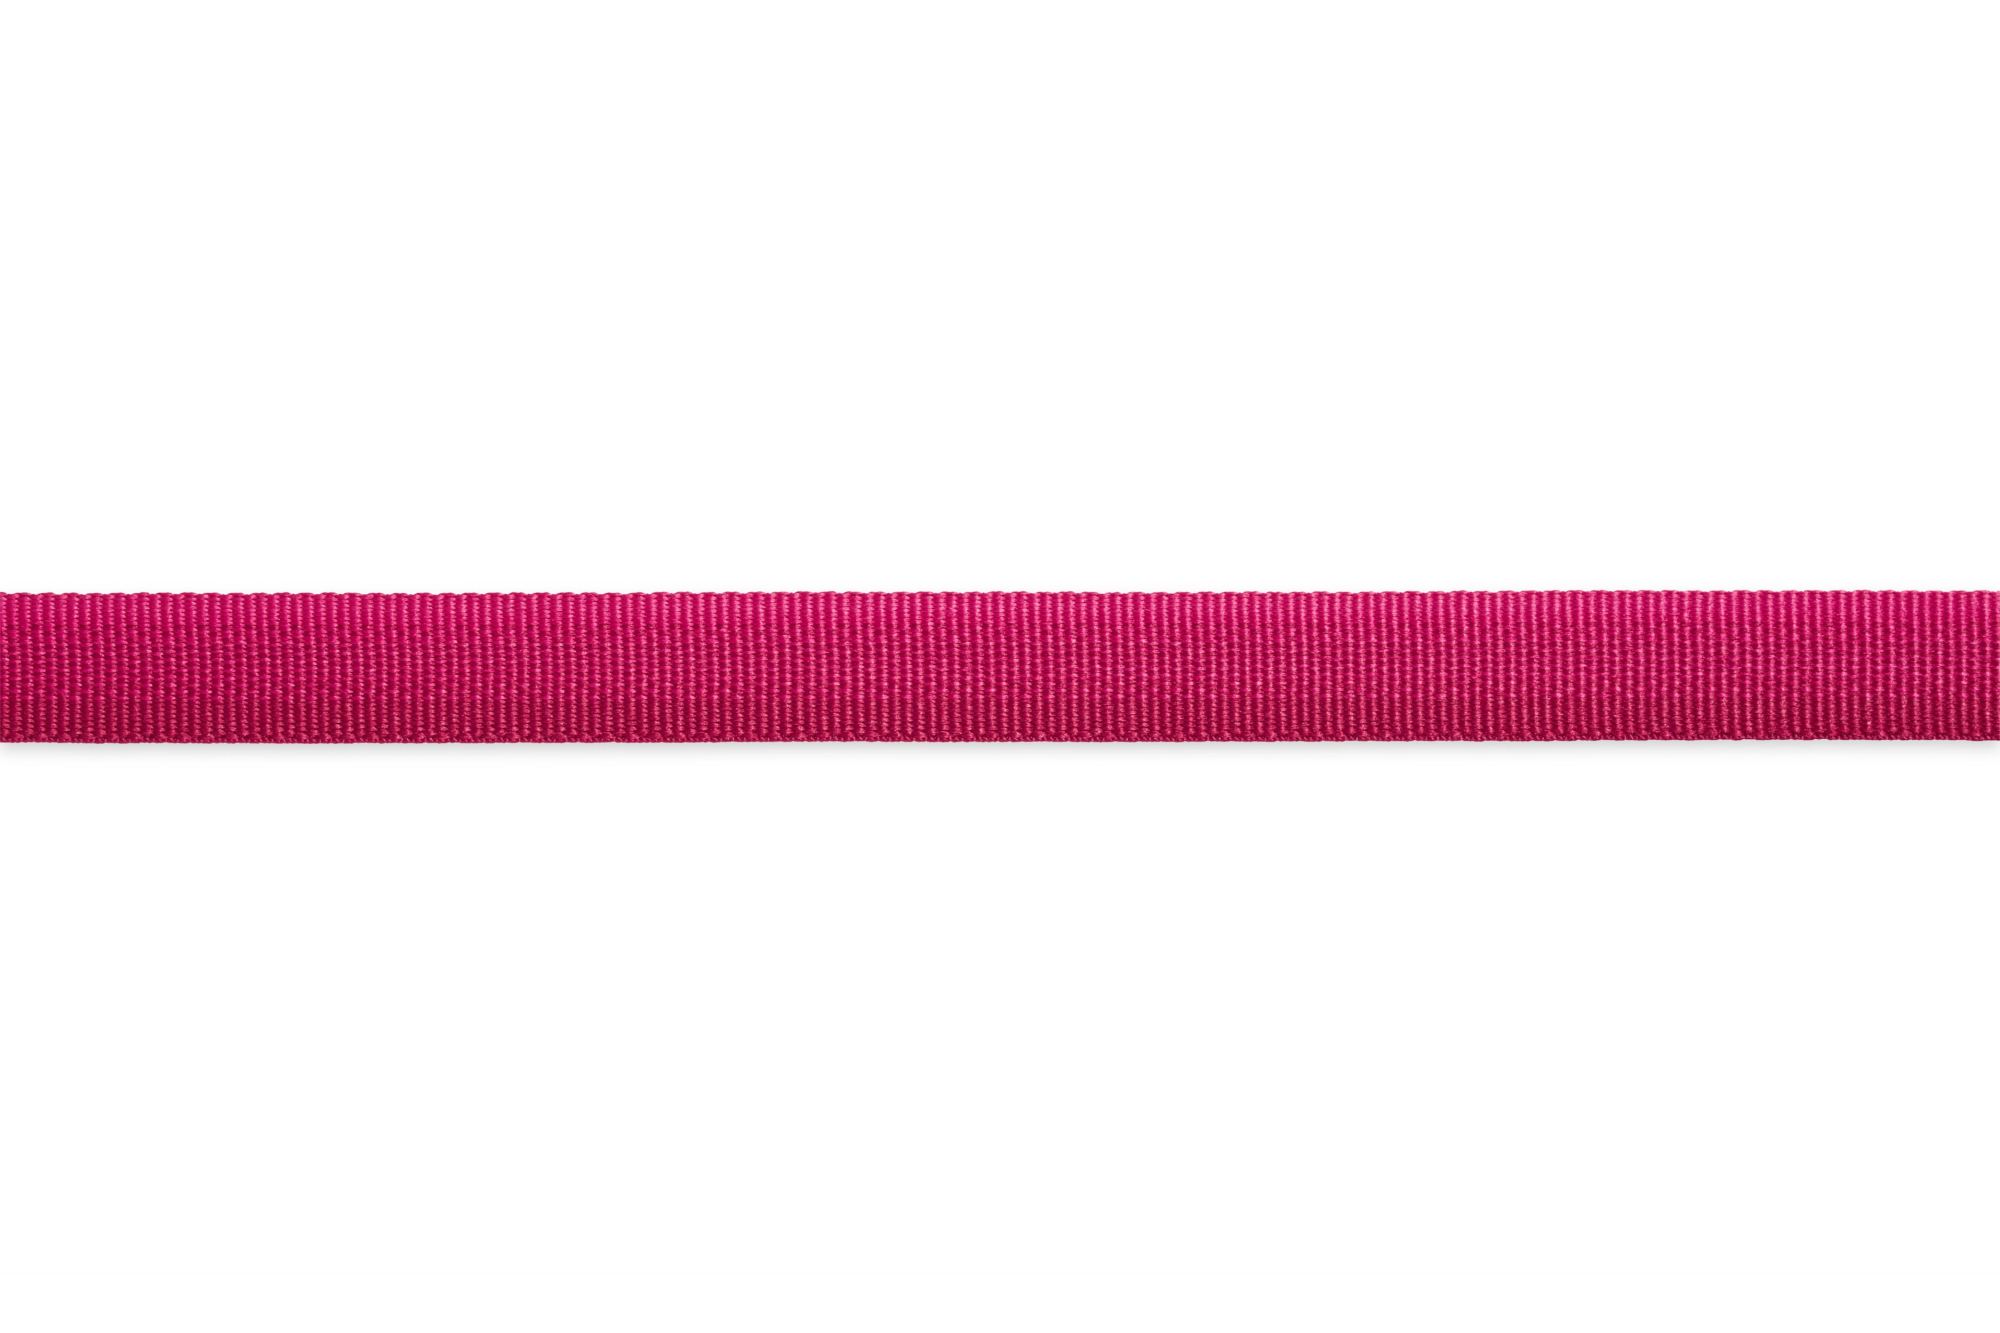 Halsband Front Range van Ruffwear Hibiscus Pink - verschillende maten beschikbaar